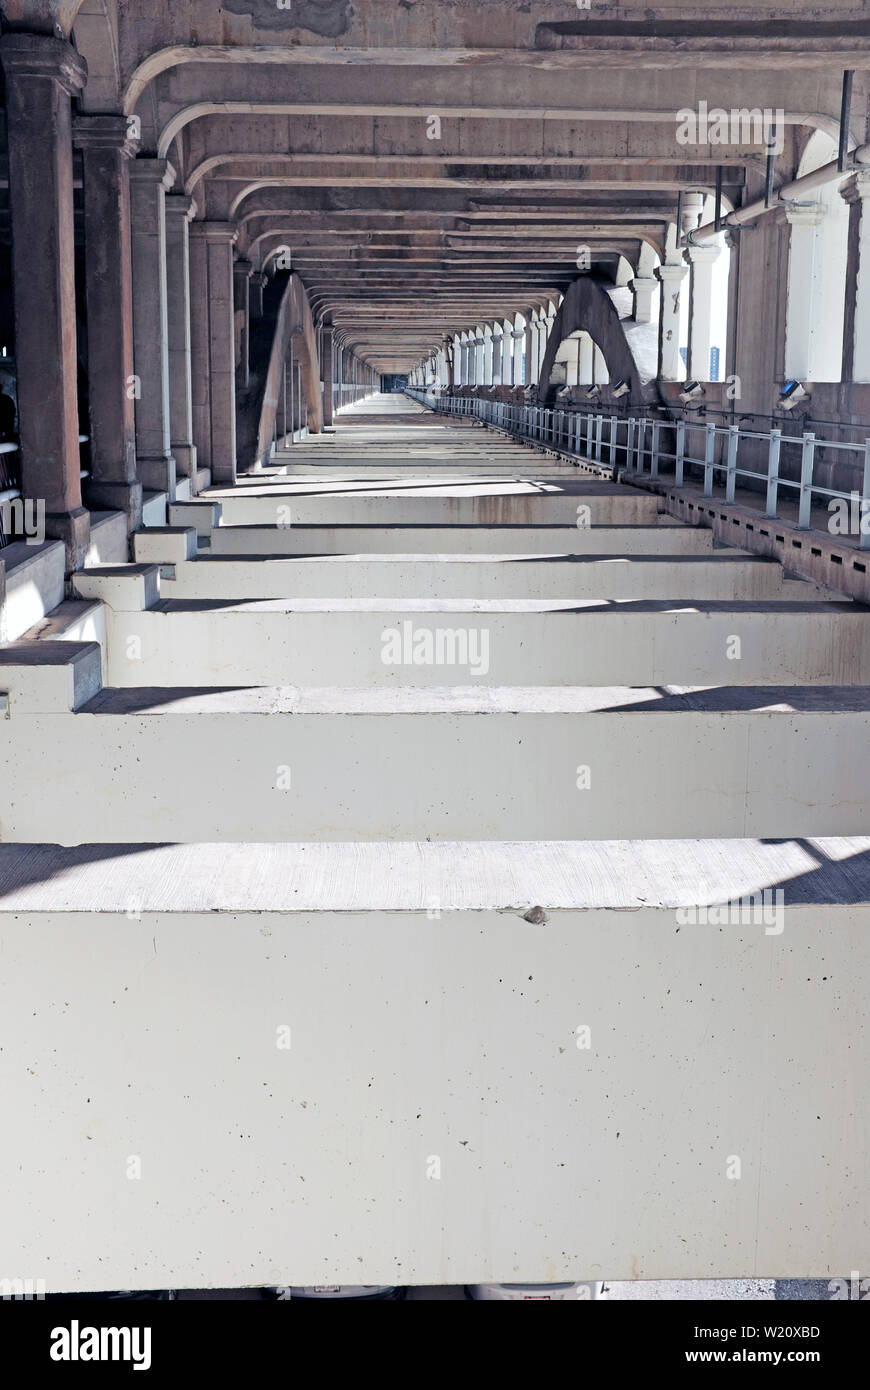 Infraestructura de puente de acero y cemento de un puente fijo de alto nivel, el Veterans Memorial Bridge, en Cleveland, Ohio, Estados Unidos Foto de stock